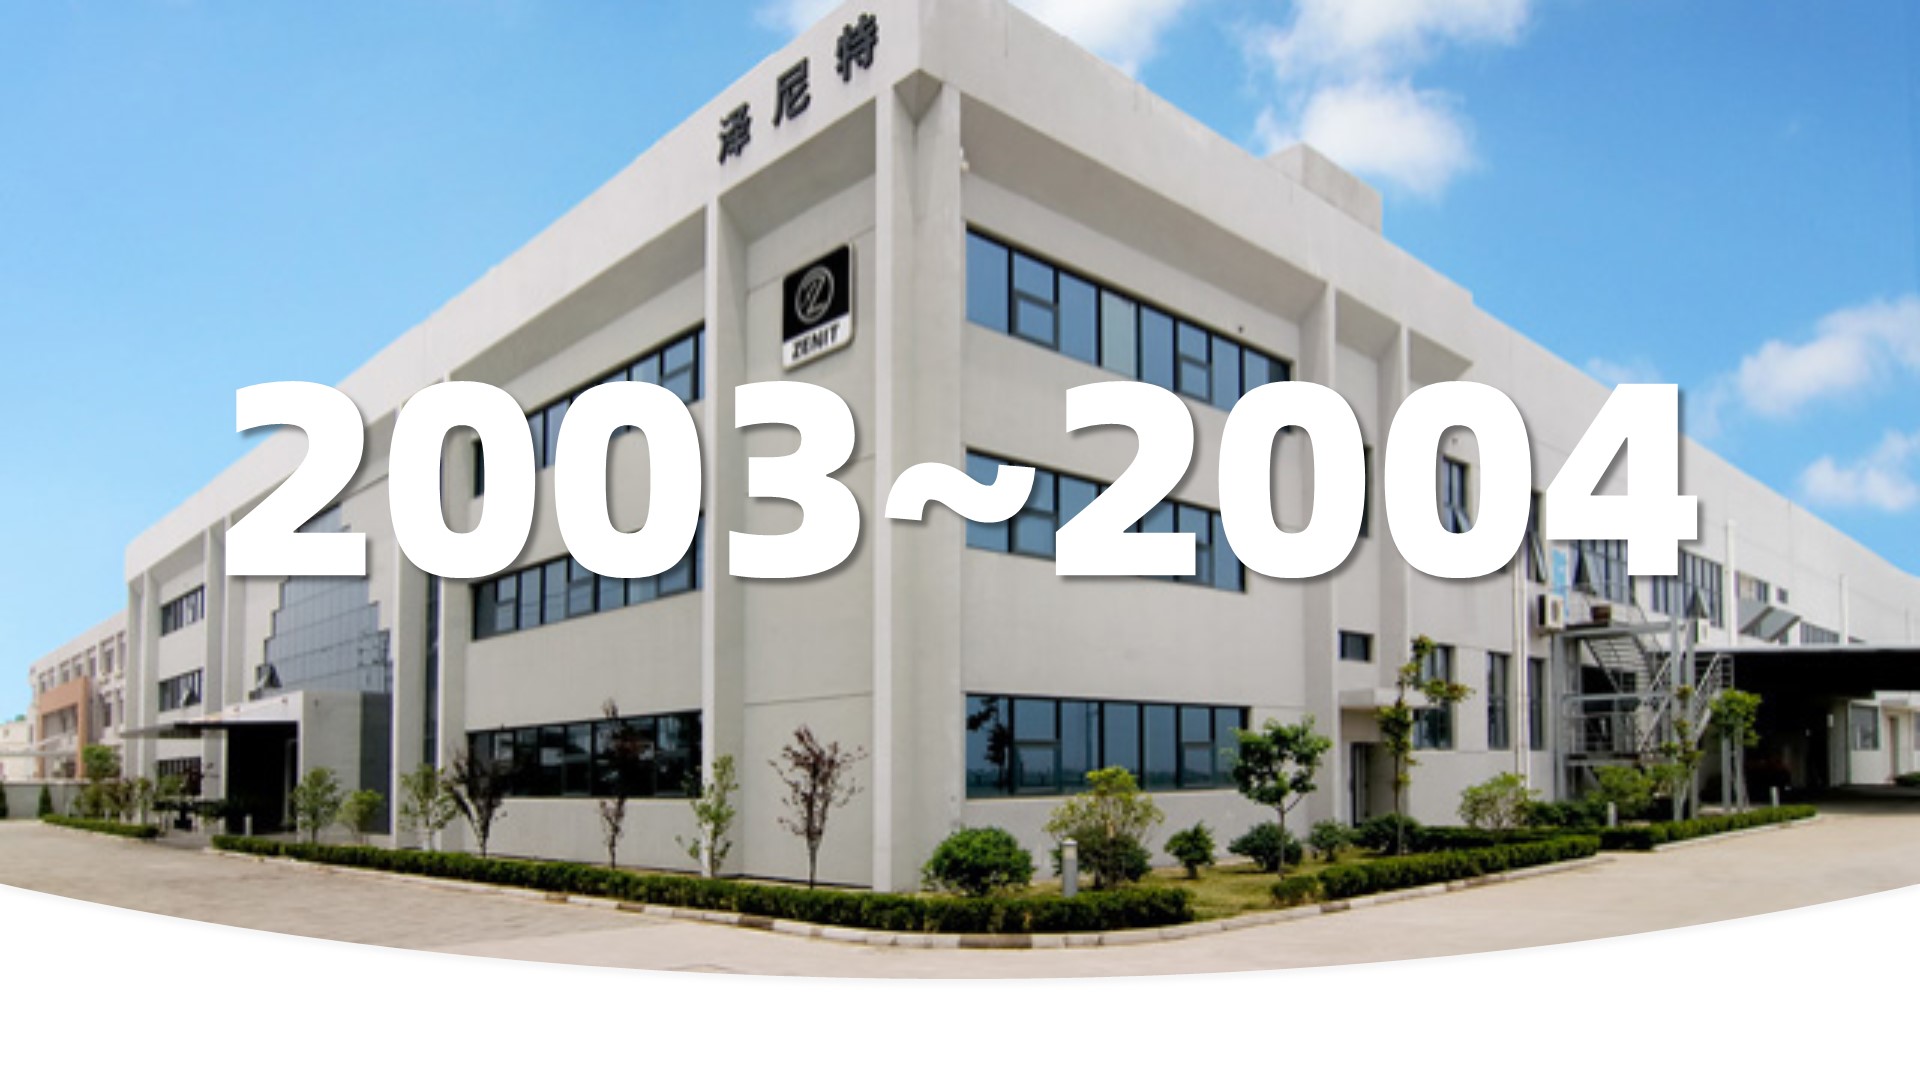 泽尼特通过UNI-EN-ISO 9001:2000 再认证和 ATEX的产品认证。2006年，泽尼特集团在新加坡成立了亚太区子公司。2007年在中国苏州投资建立了新的生产基地和销售团队，总占地面积16,500平方米，目前覆盖面积8,000平方米。